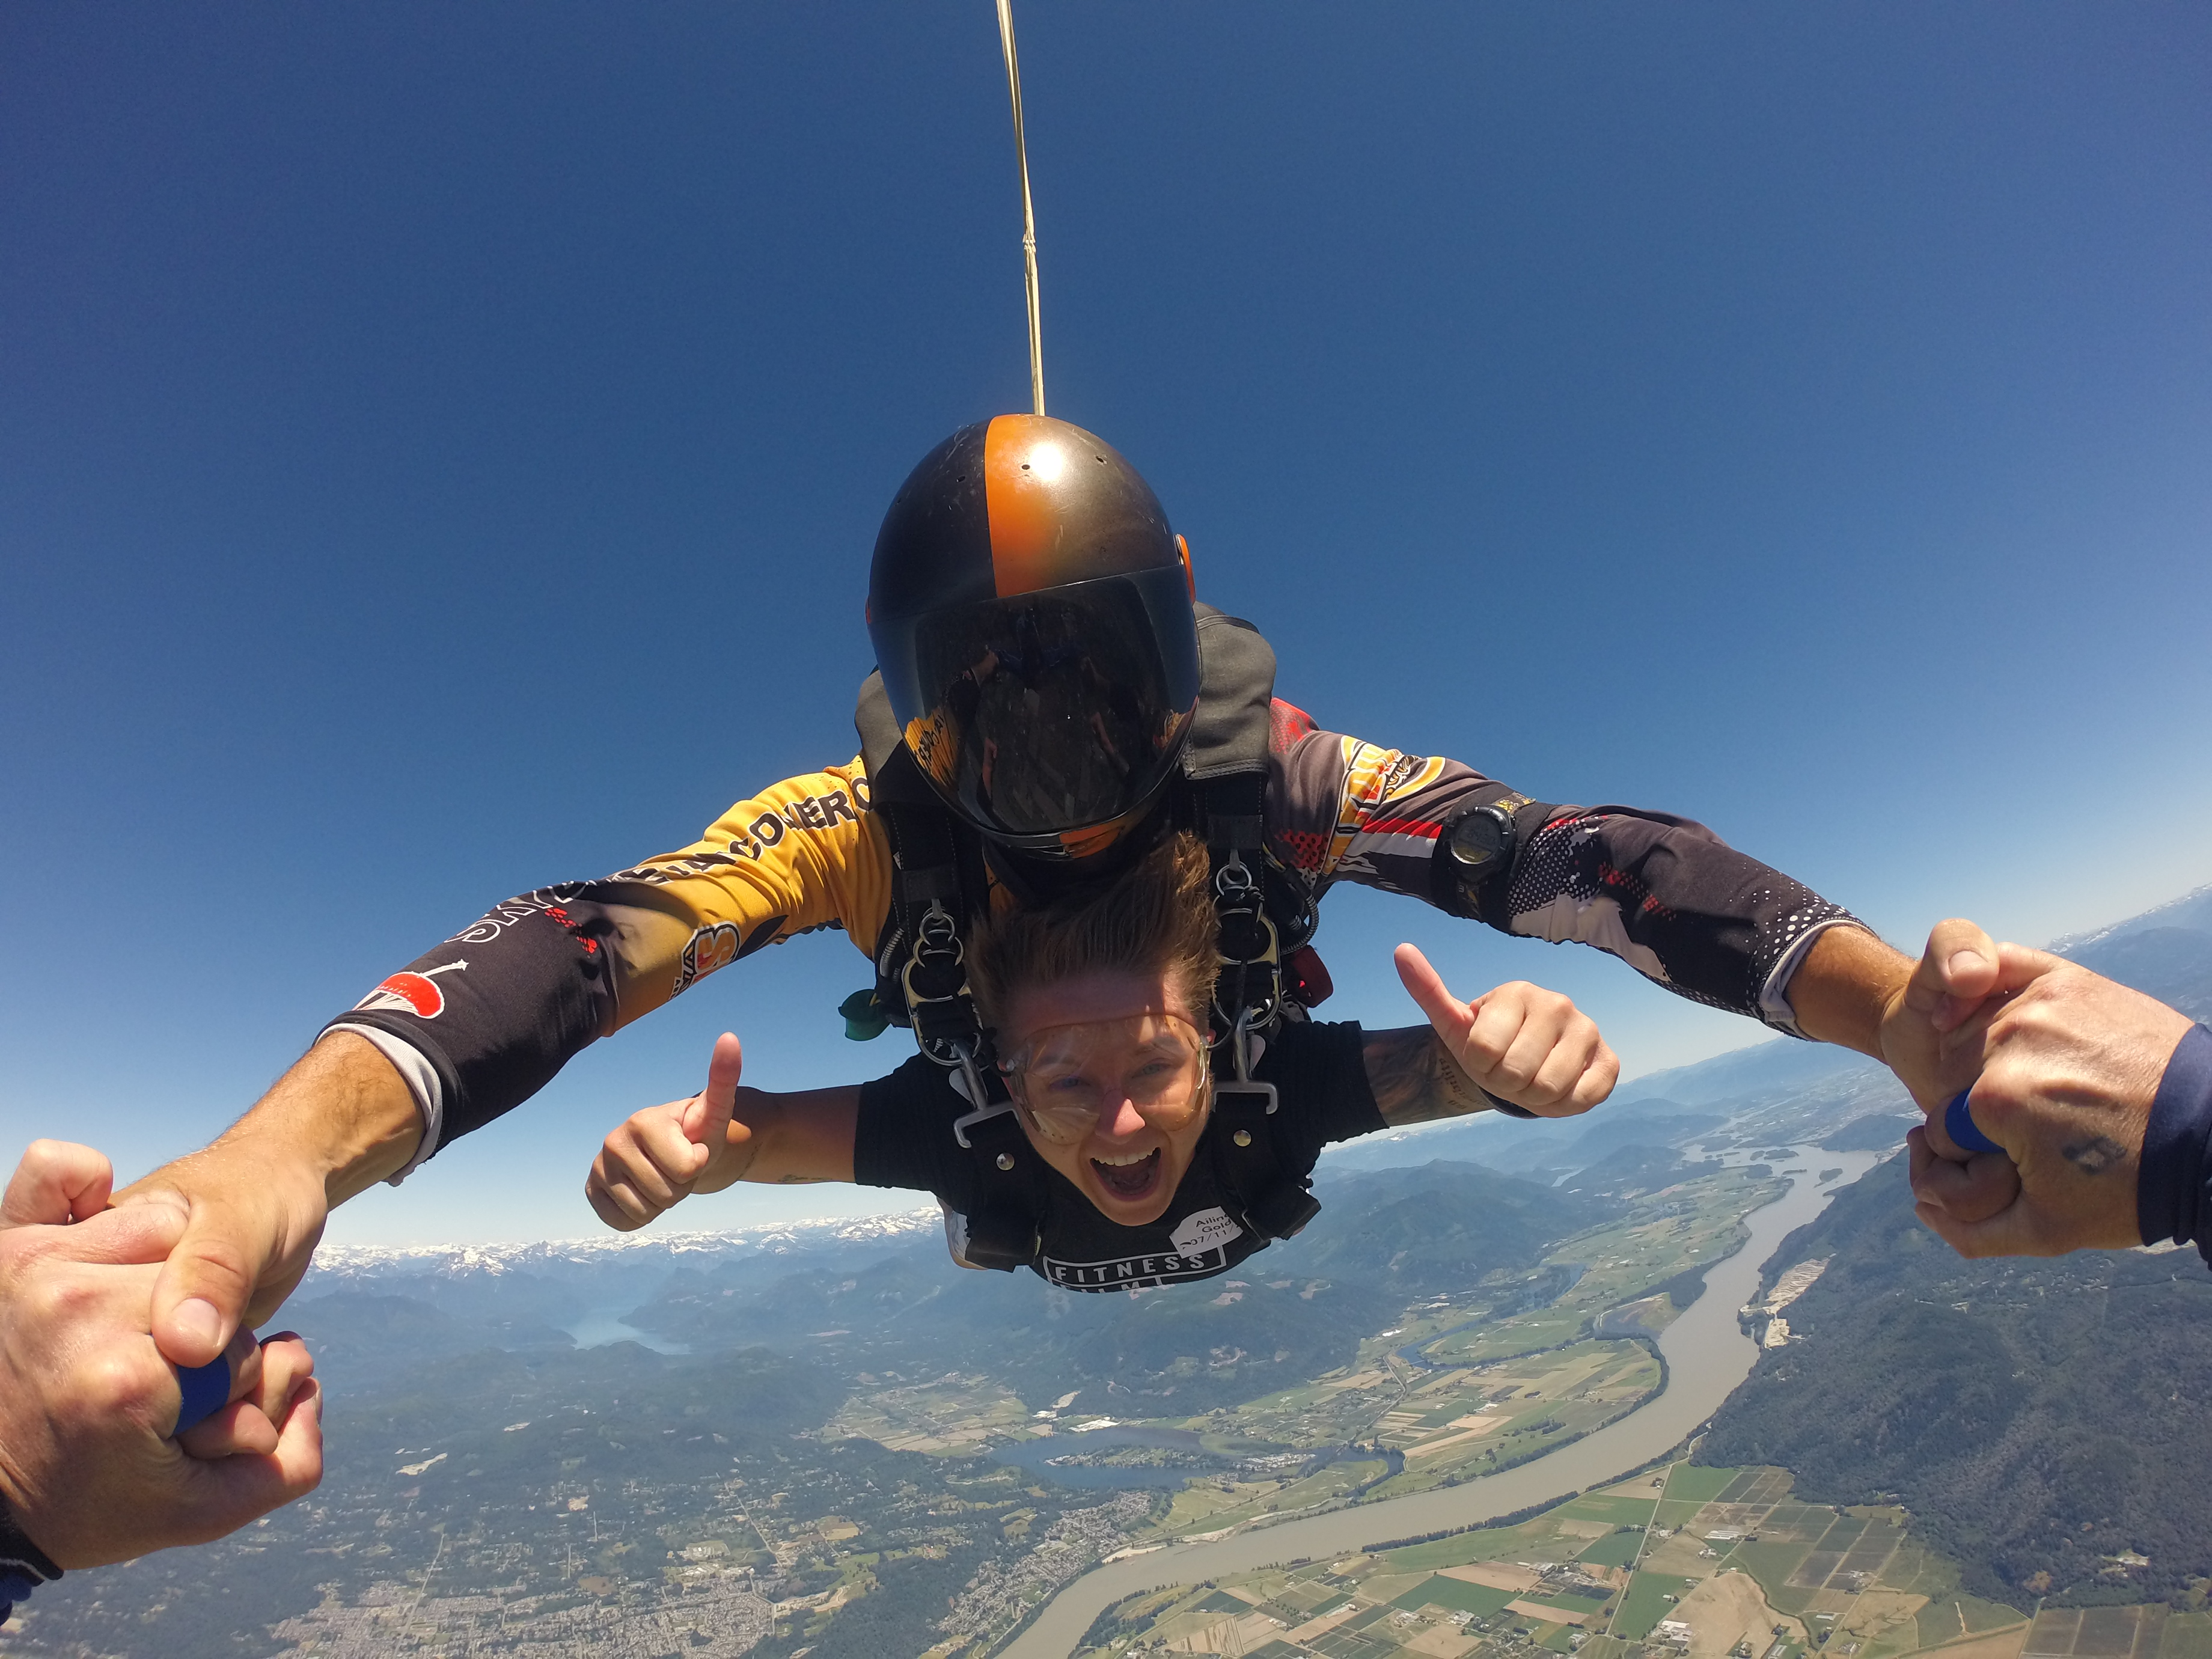 Młoda kobieta skacze ze spadochronem. Uśmiecha się do kamery i pokazuje kciuki do góry